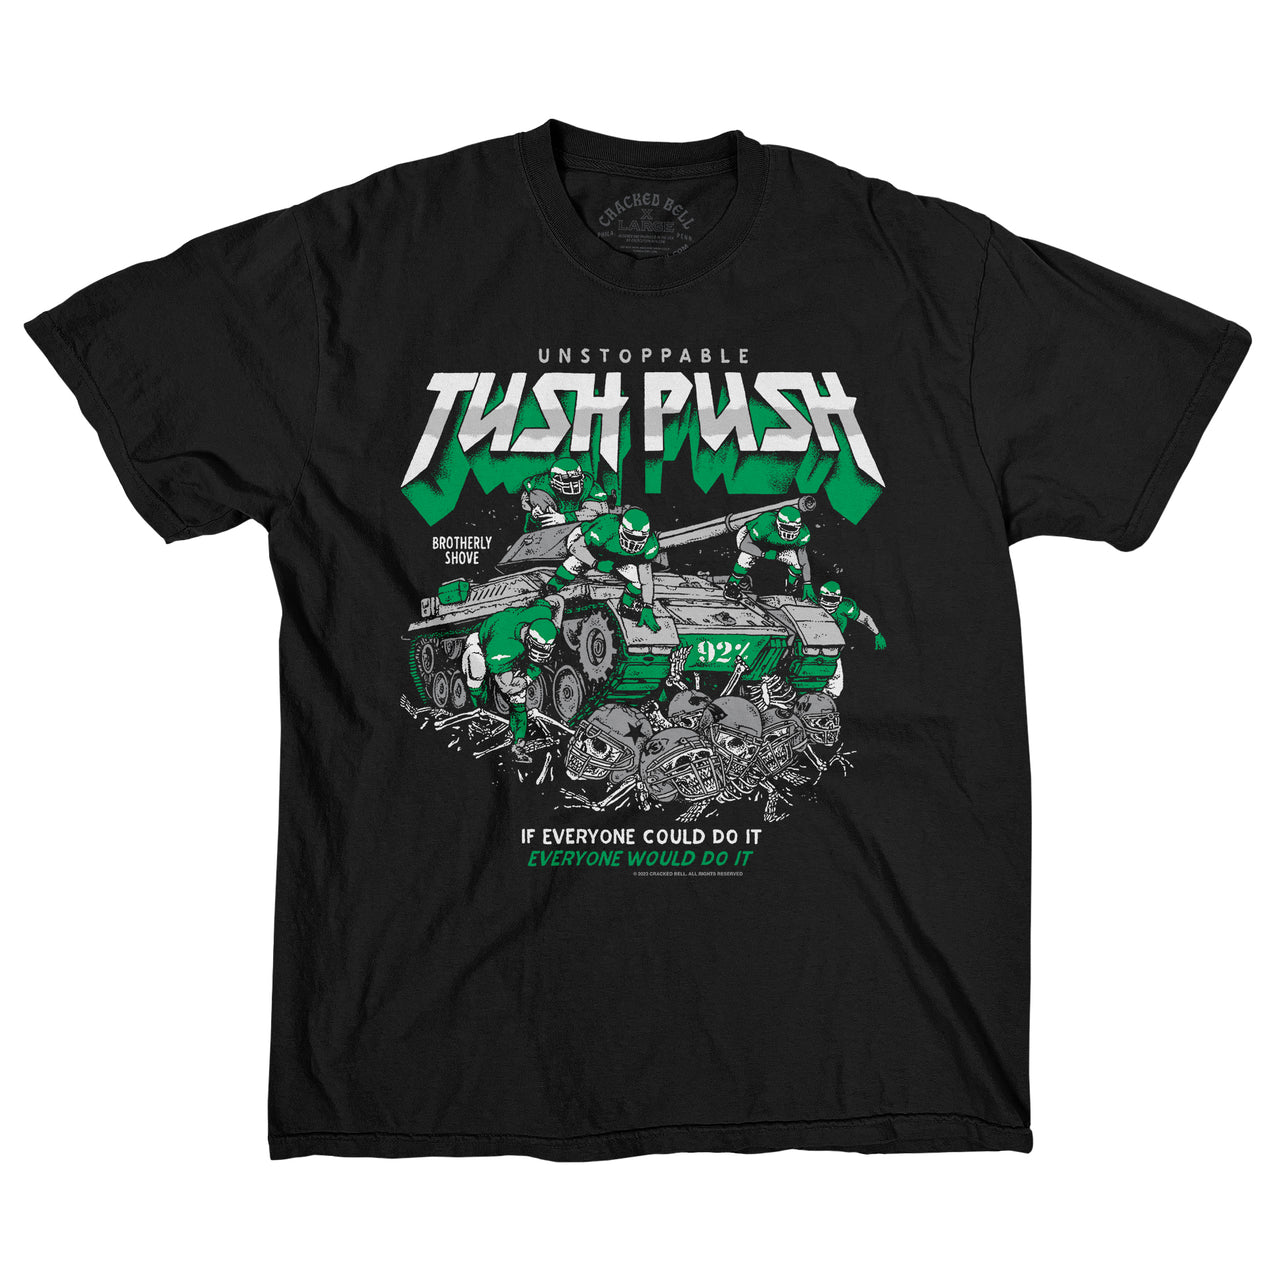 "Tush Push" Shirt